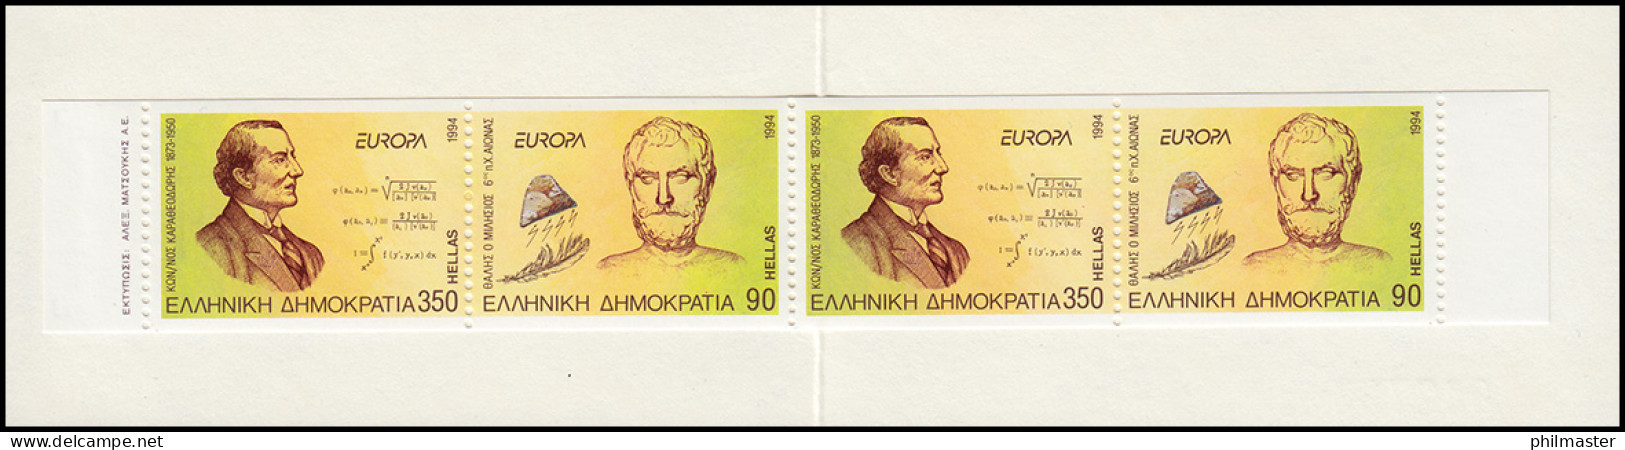 Griechenland Markenheftchen 17 Europa 1994, Postfrisch ** / MNH - Postzegelboekjes